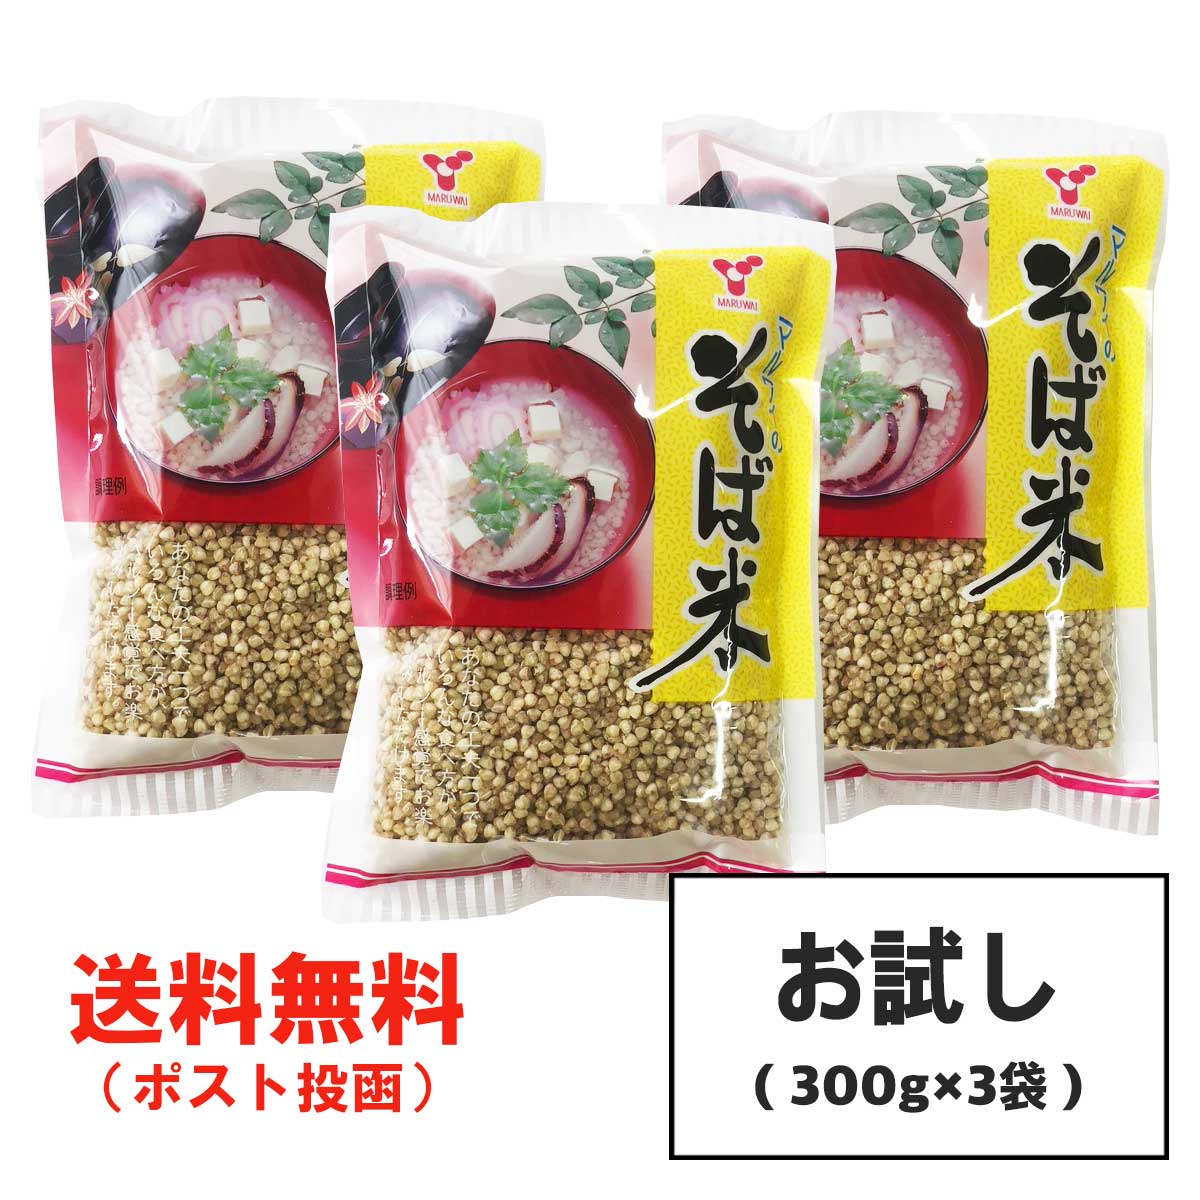 お試し 横関食糧 そば米 900g (300g×3袋) 雑穀